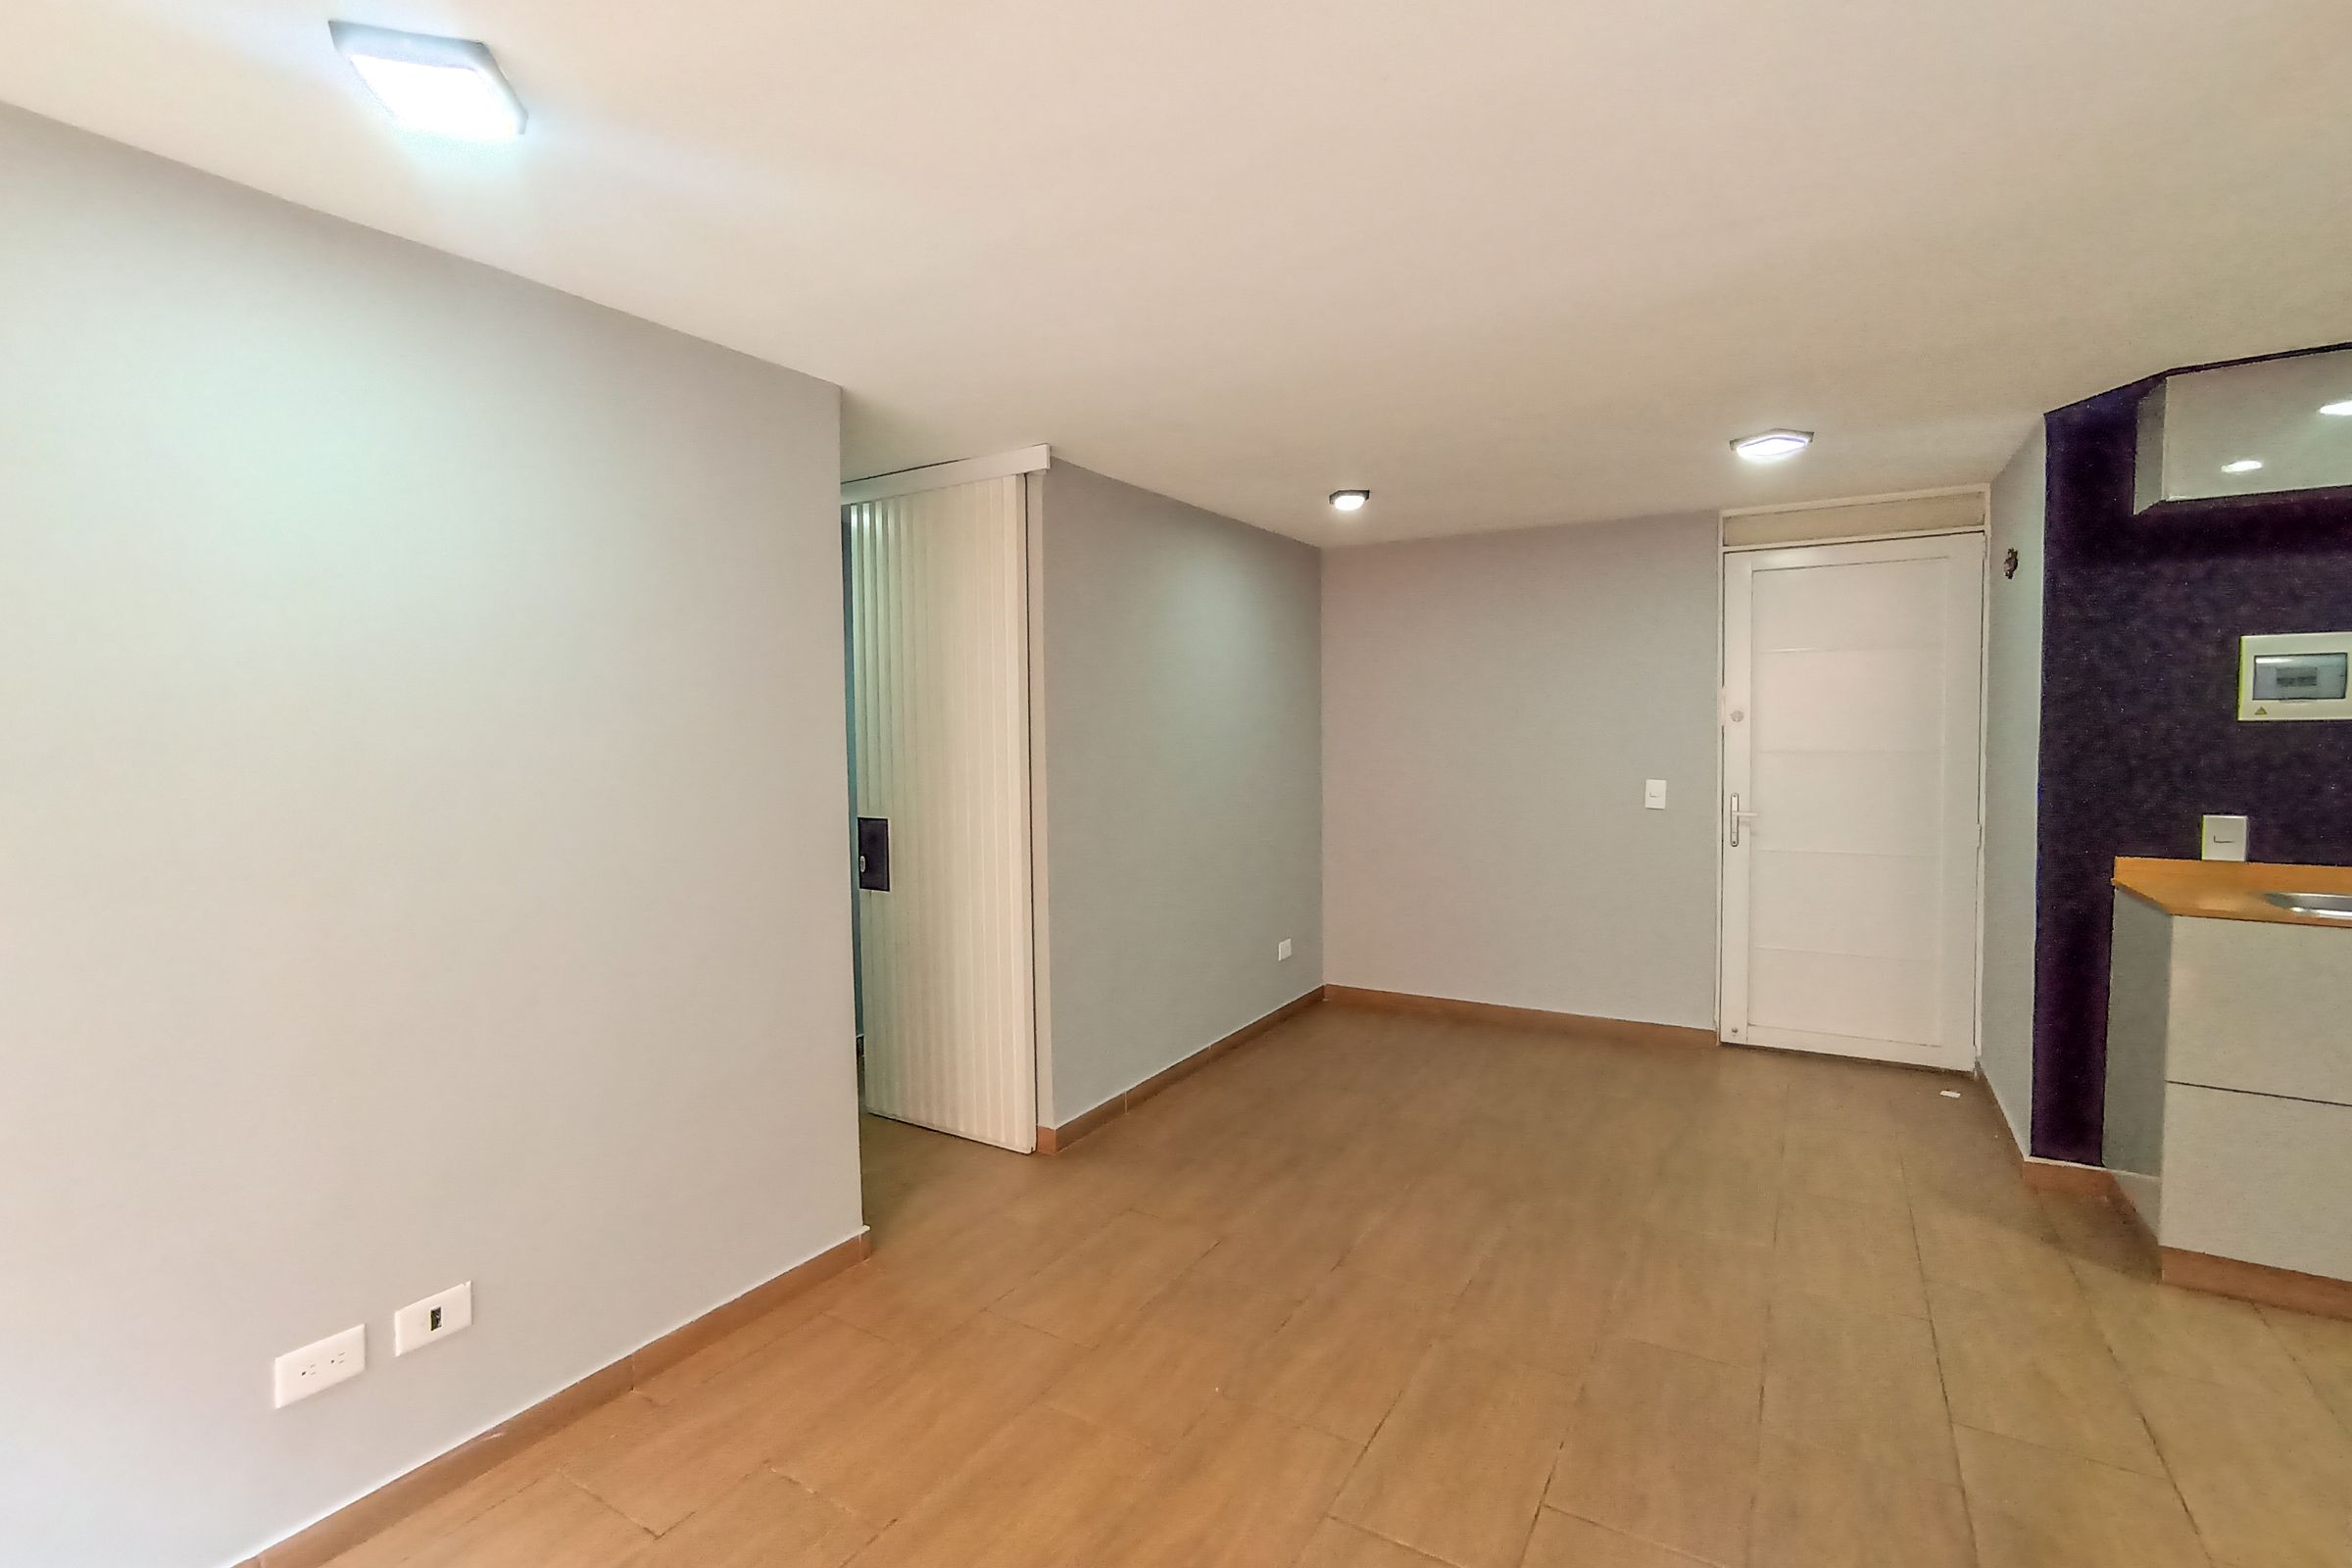 Apartamento en arriendo Madrid 62 m² - $ 850.000,00